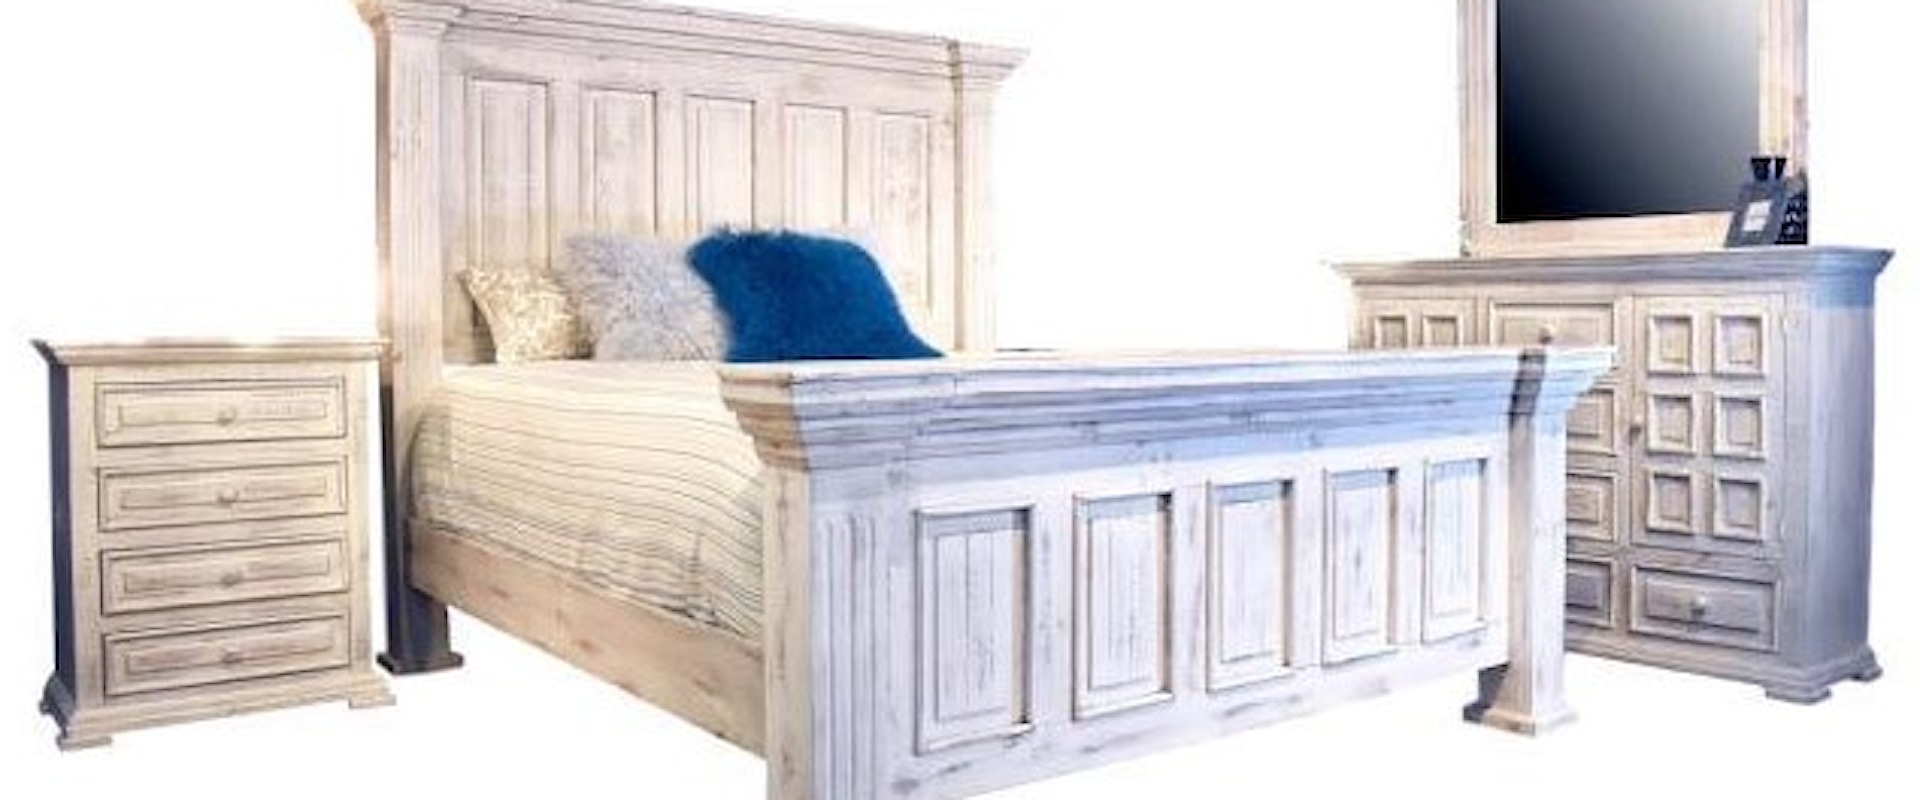 Chalet Queen Bedroom Group- Queen Bed,Dresser/Mirror,Nightstand